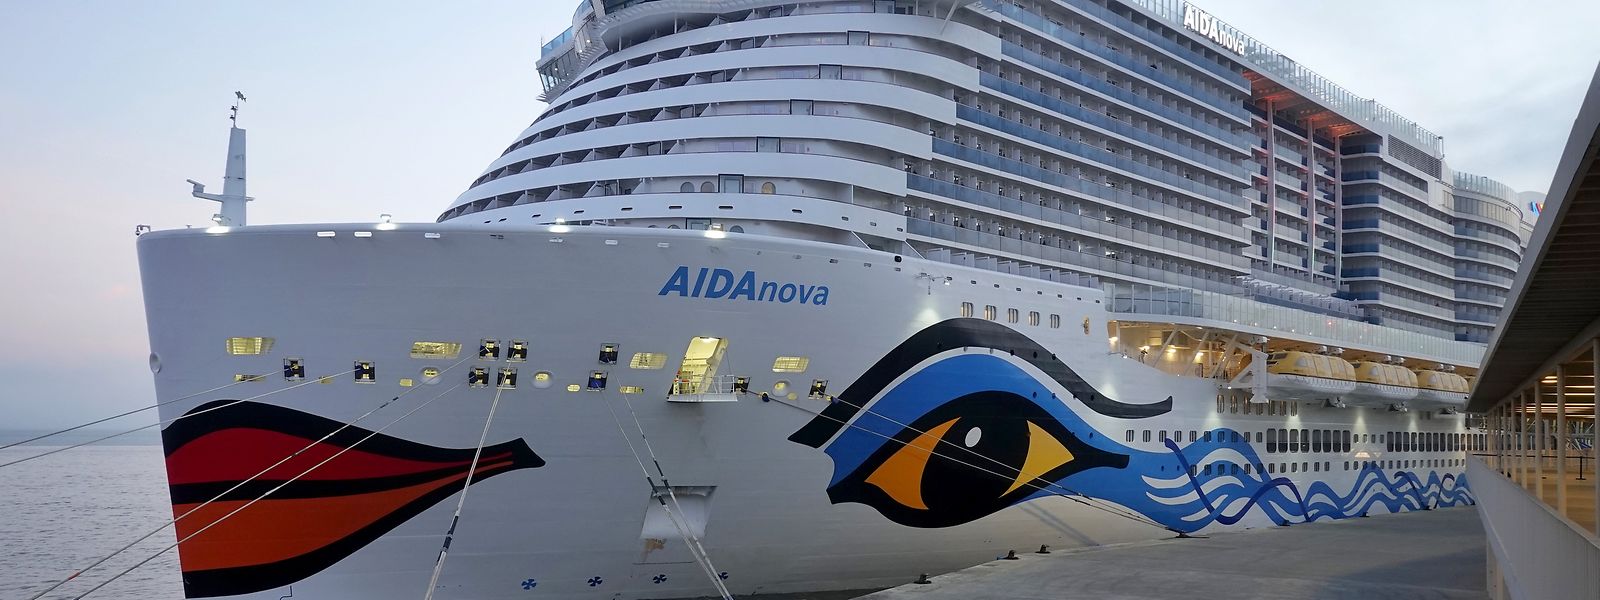 Das Kreuzfahrtschiff AIDAnova liegt im Kreuzfahrtterminal der portugiesischen Hauptstadt. Das Schiff sollte am 30.12.2021 von Lissabon aus in Richtung Madeira und Kanarische Inseln starten. 